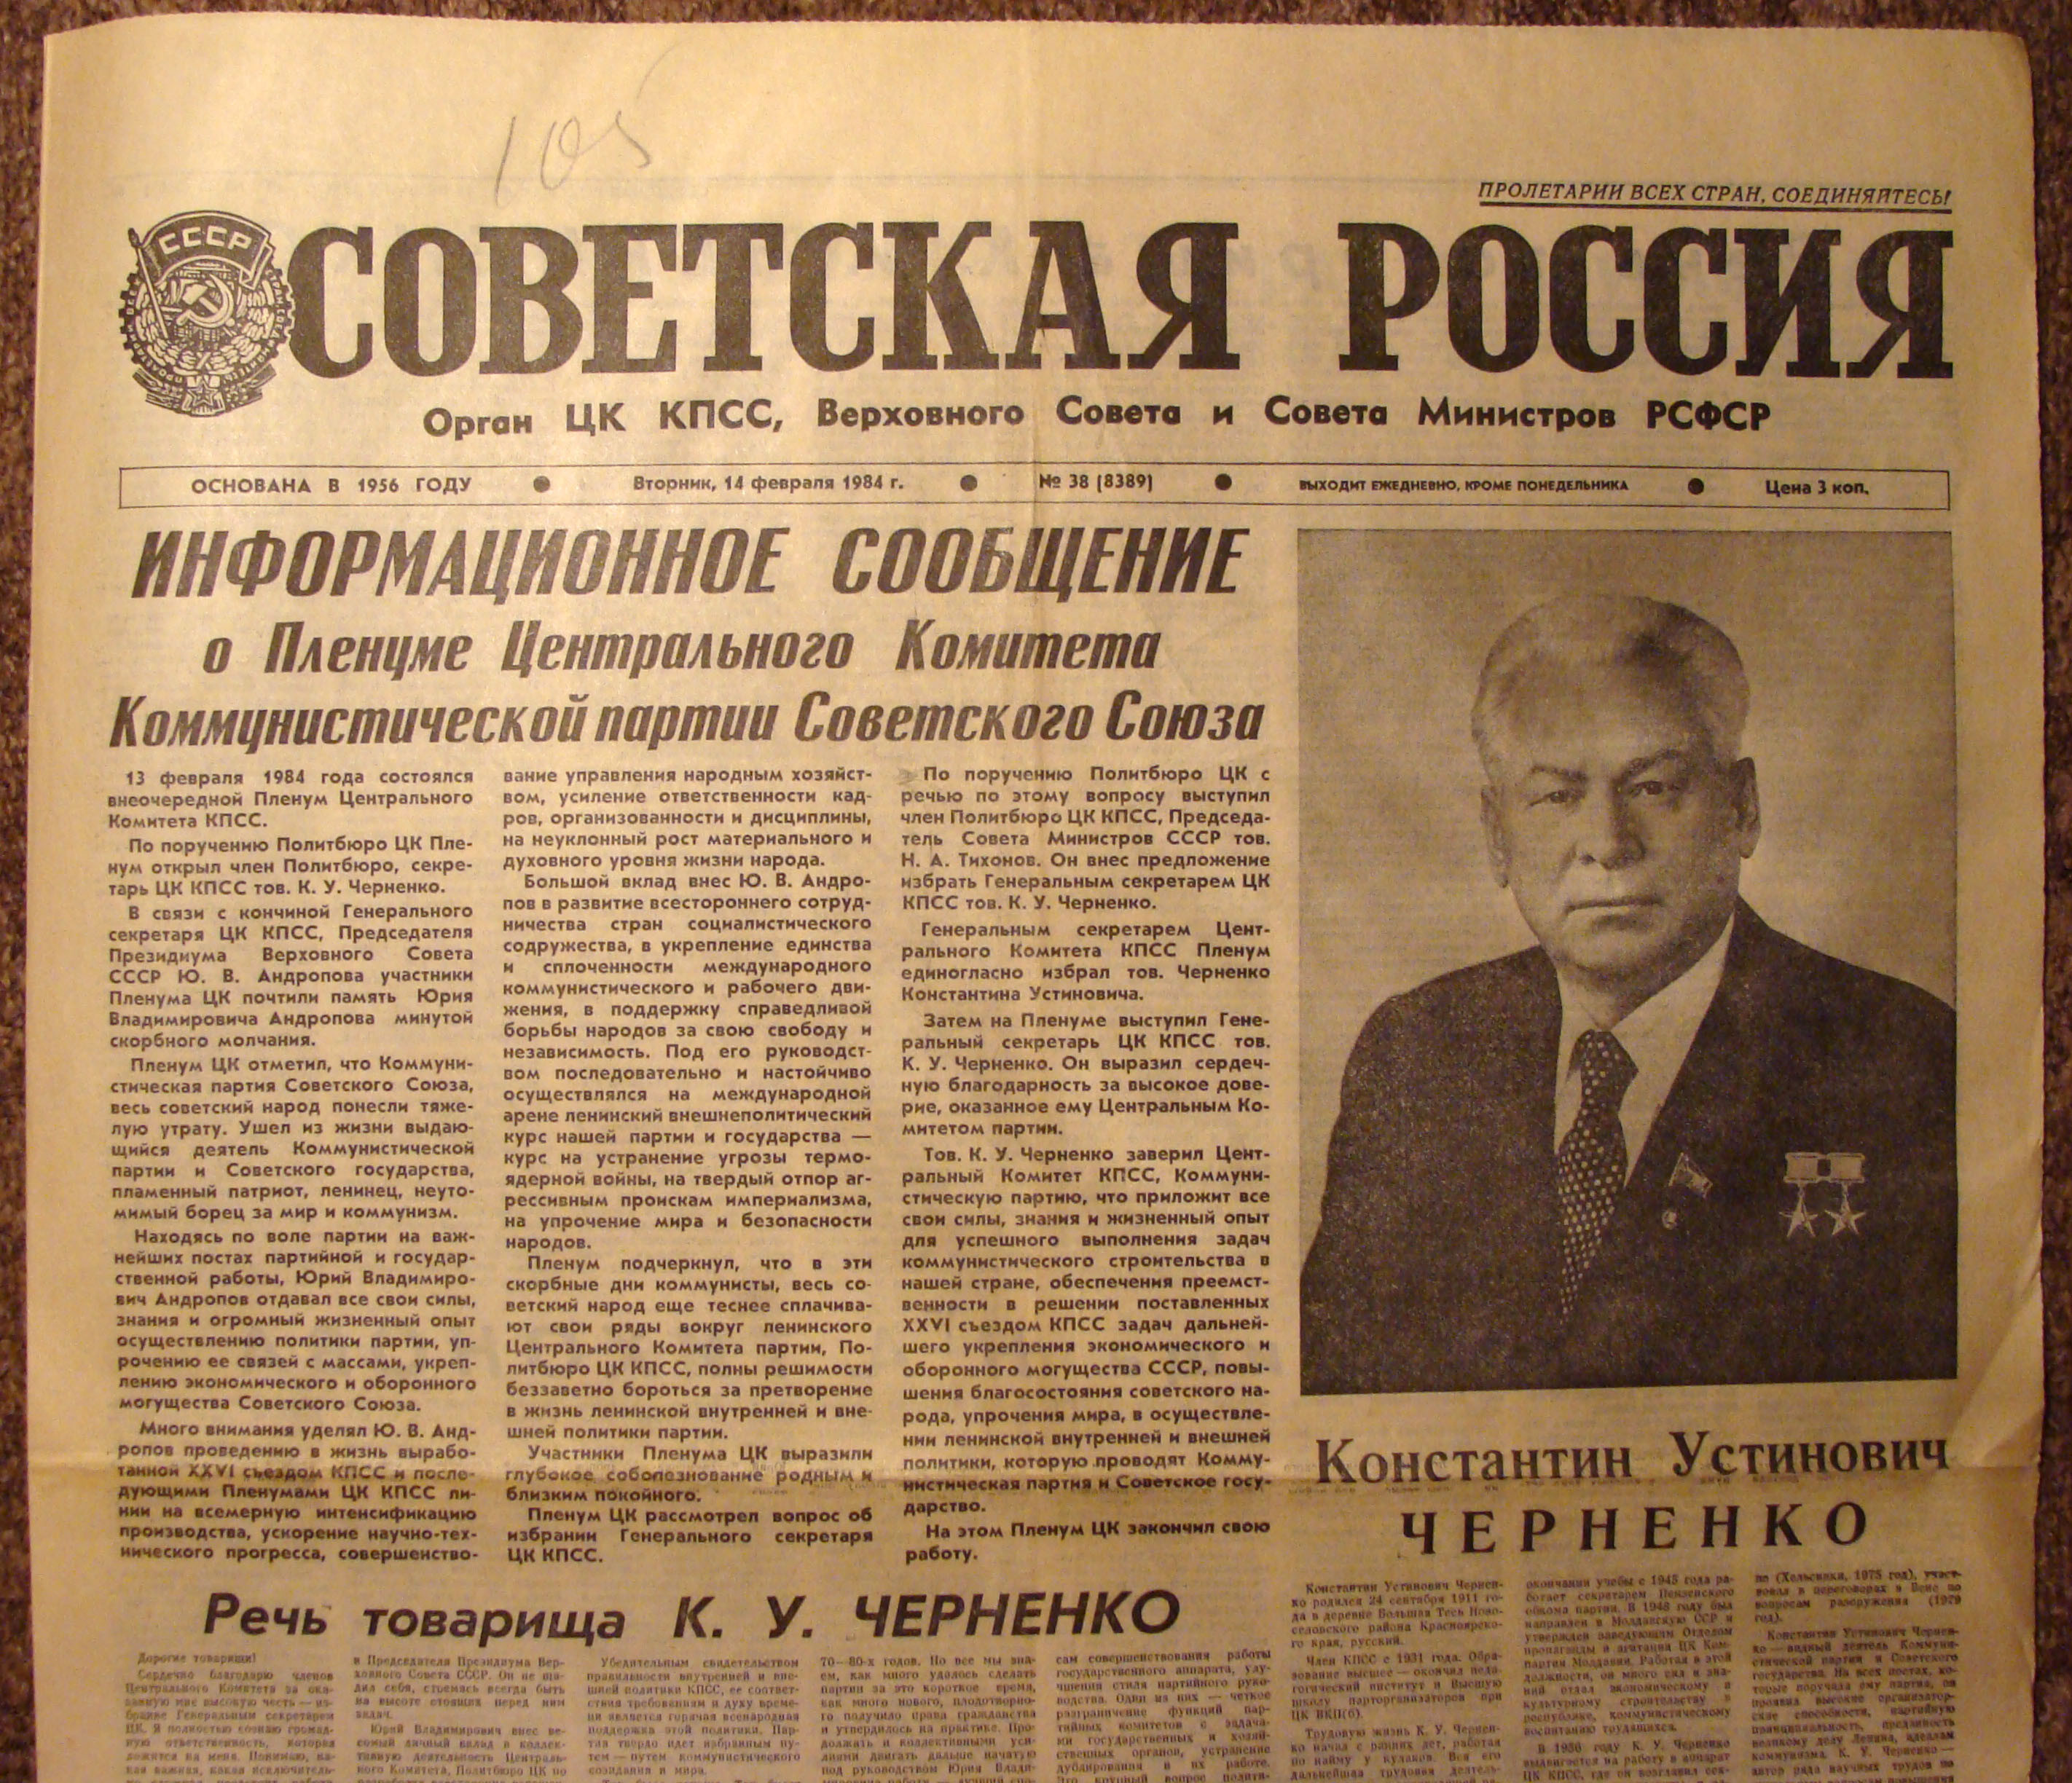 Правда в советское время